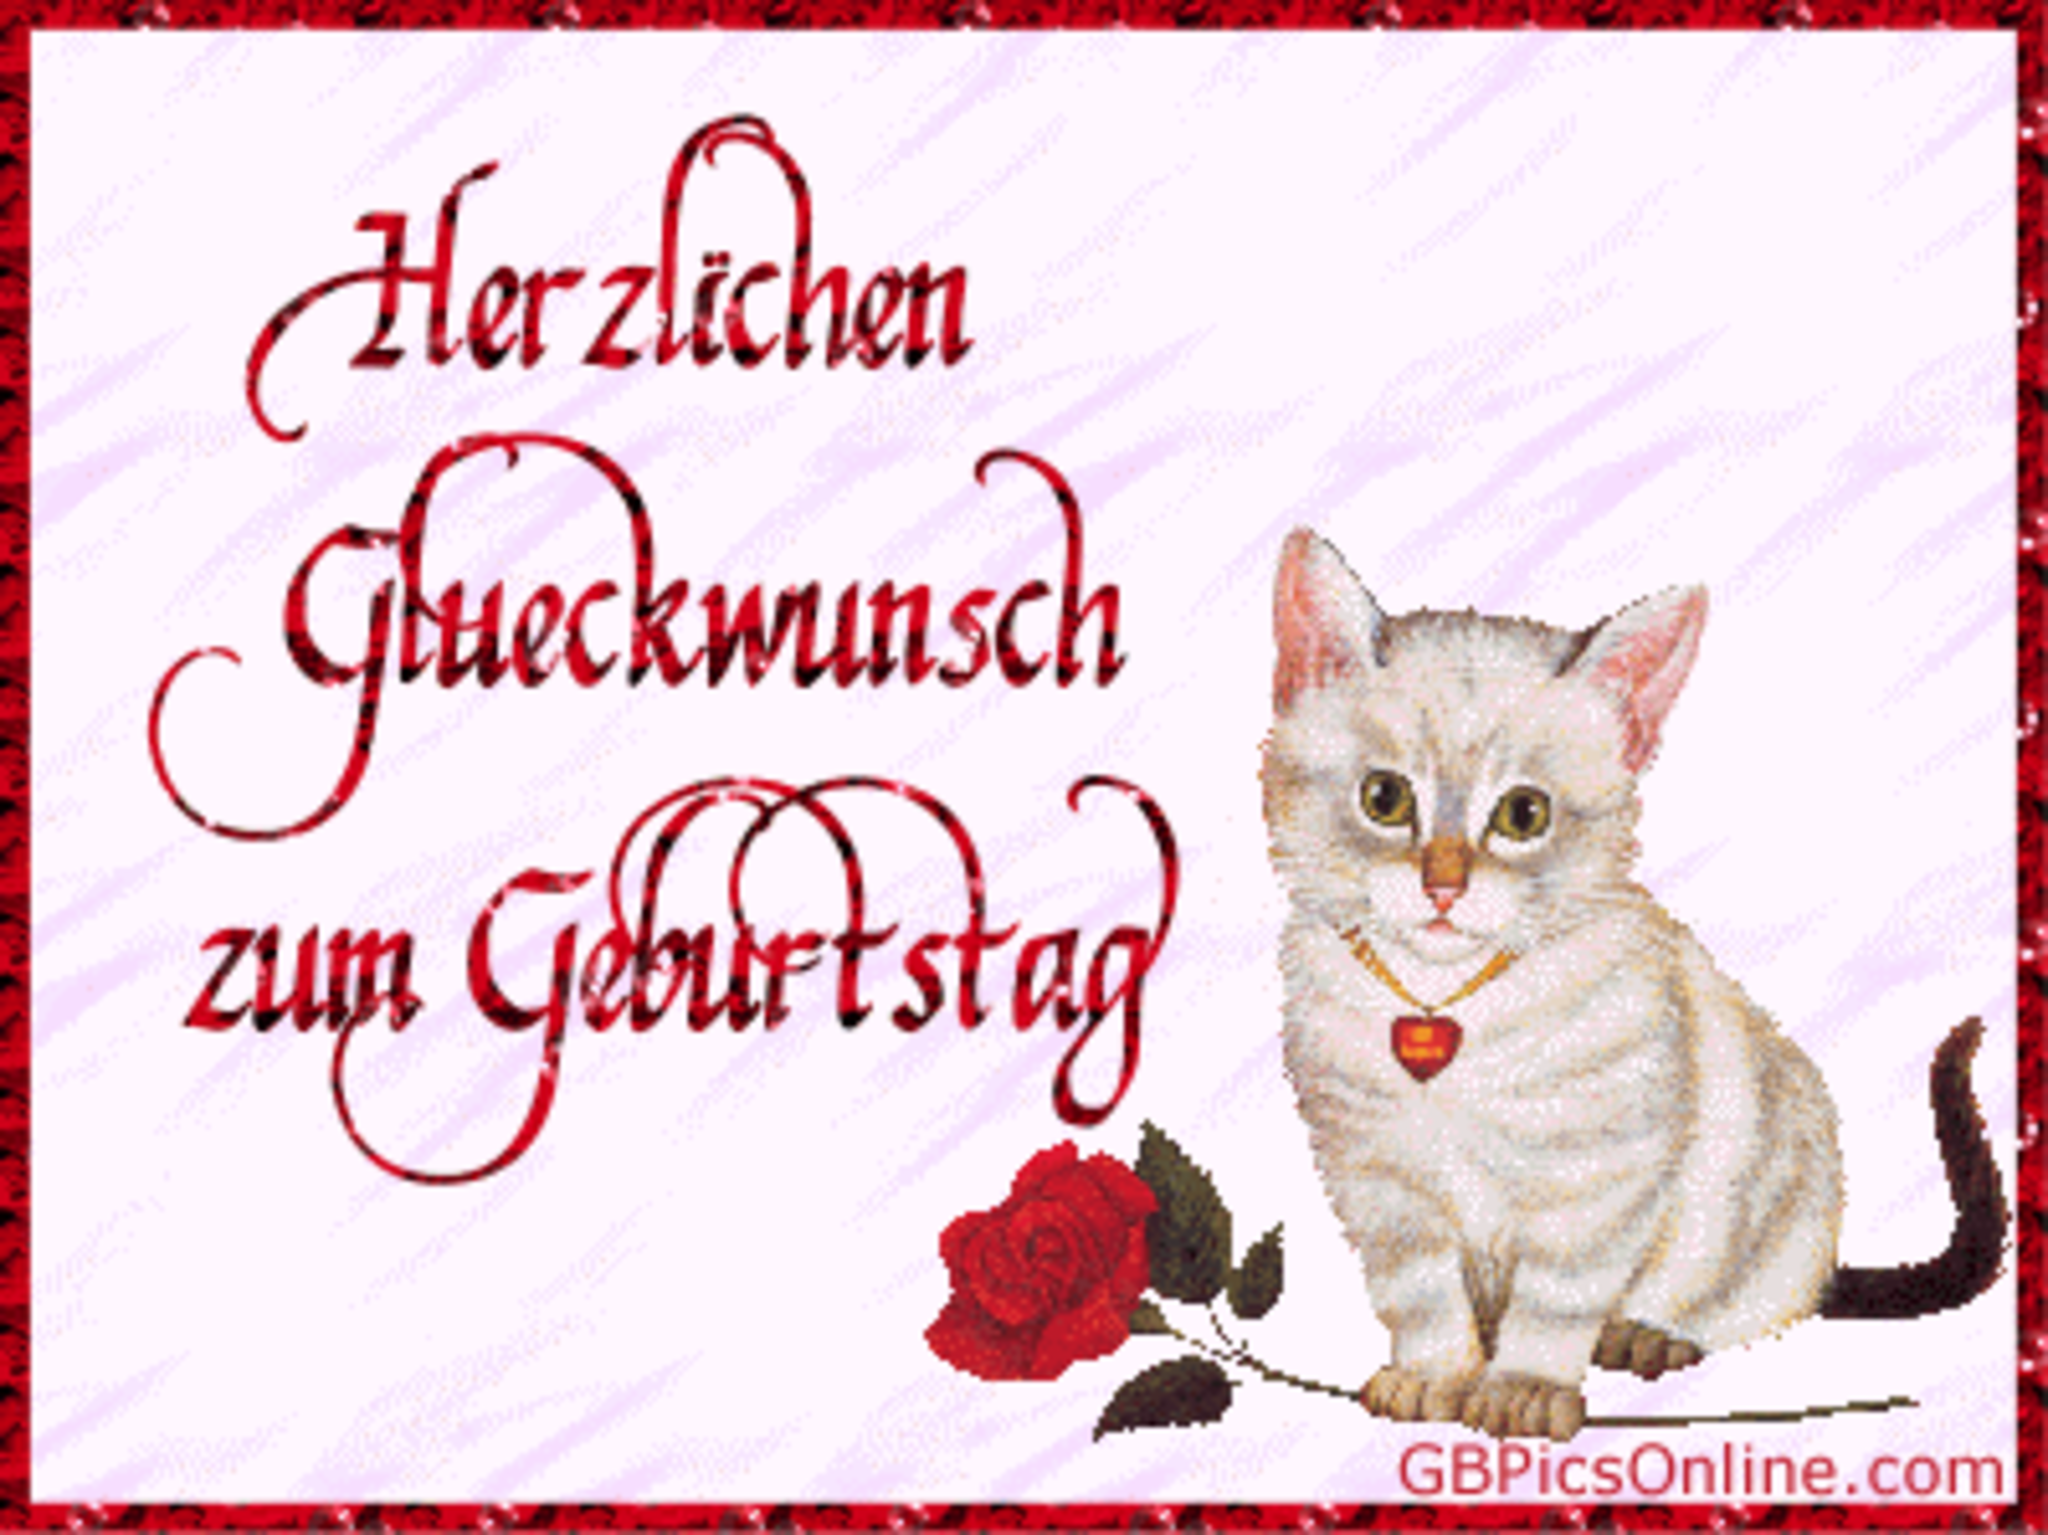 Поздравления с днём рождения мужчине на немецком языке. Поздравительная открытка с днём рождения на немецком языке. Немецкие открытки с днем рождения. Поздравление с др на немецком. Поздравление с днем рождения на немецком мужчине